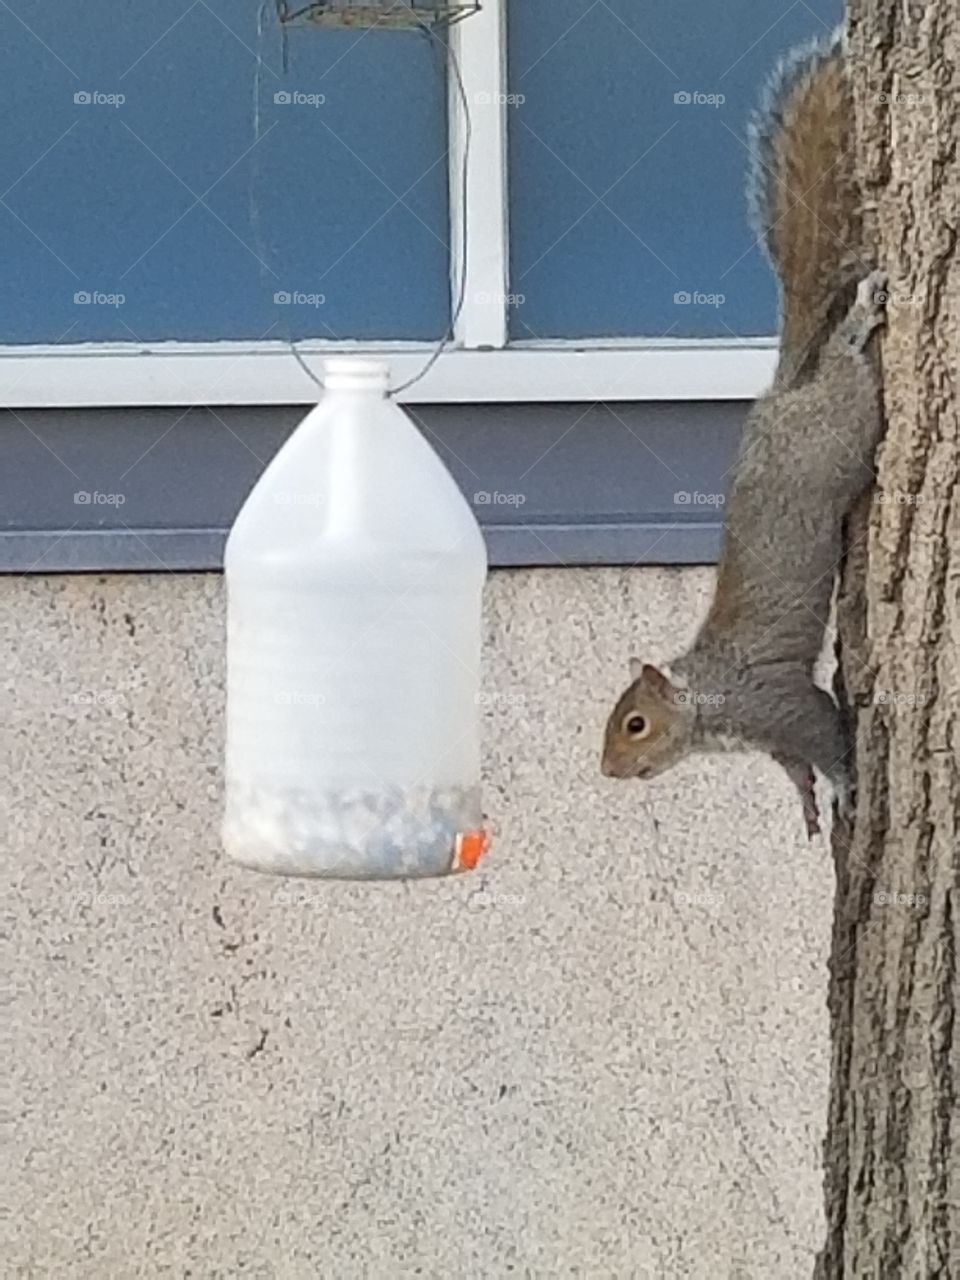 Trish the Squirrel